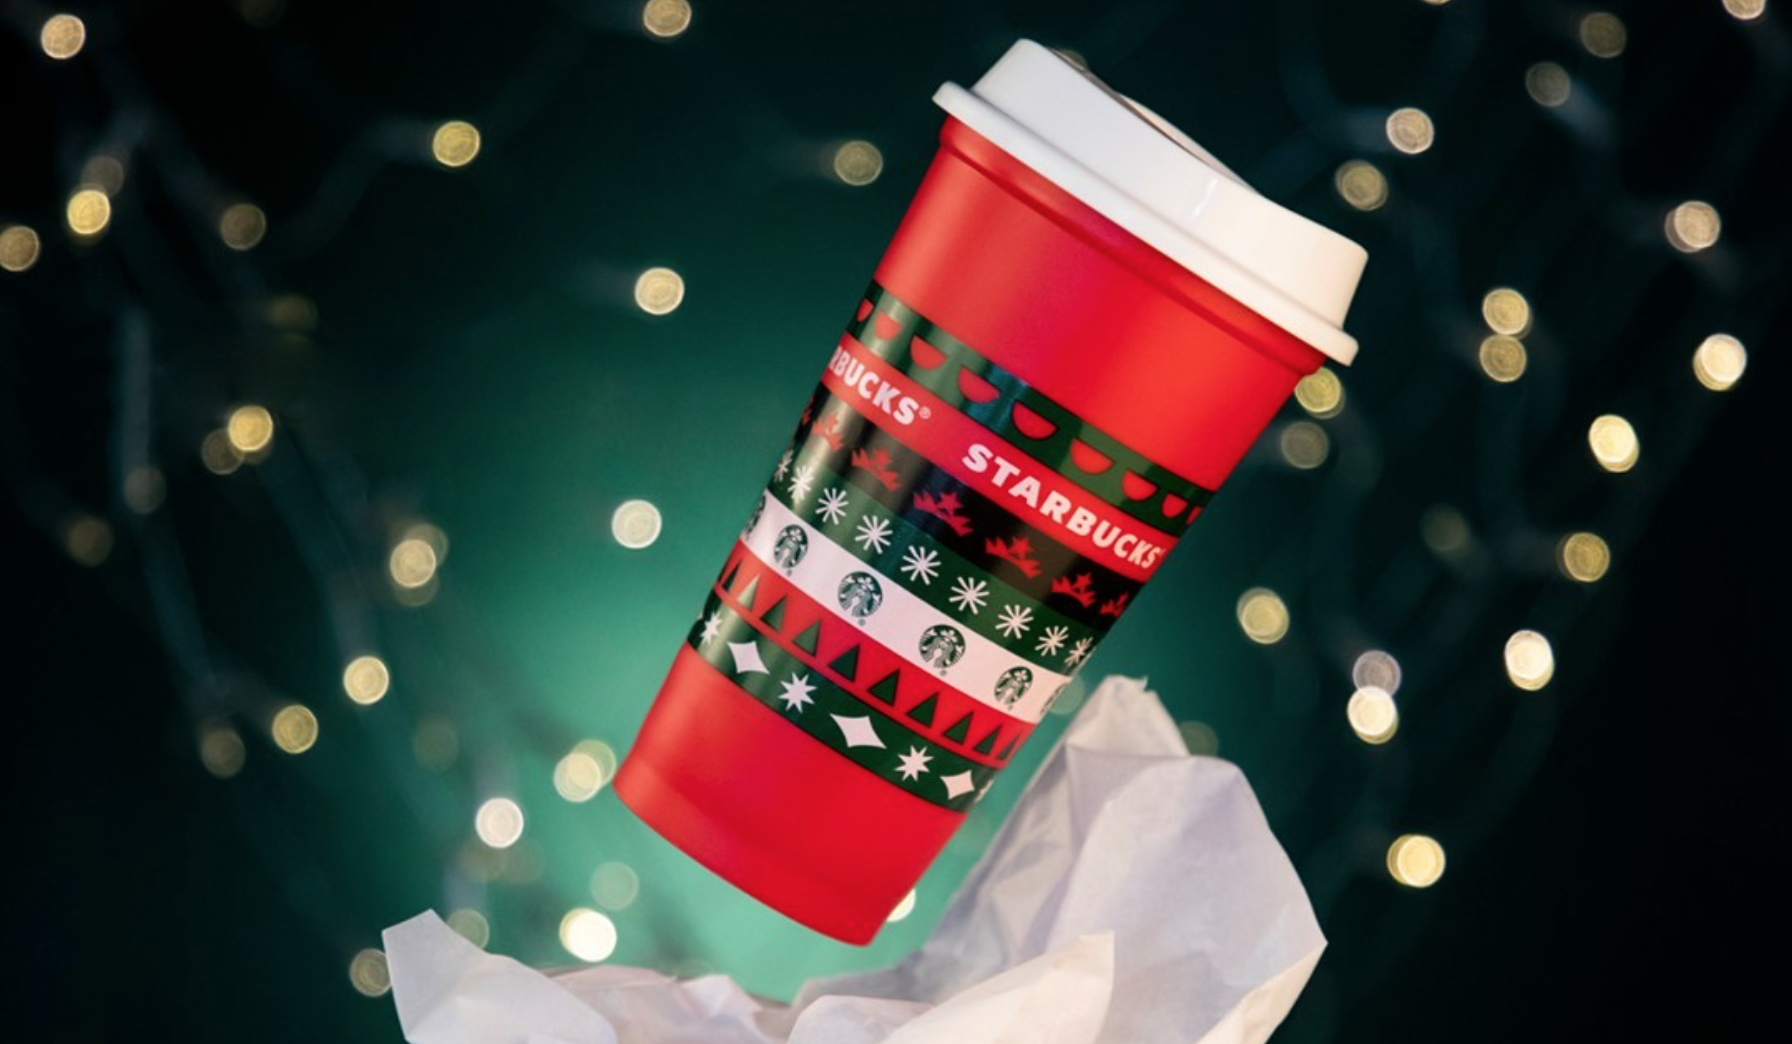 Cómo obtener el famoso vaso navideño gratis de Starbucks